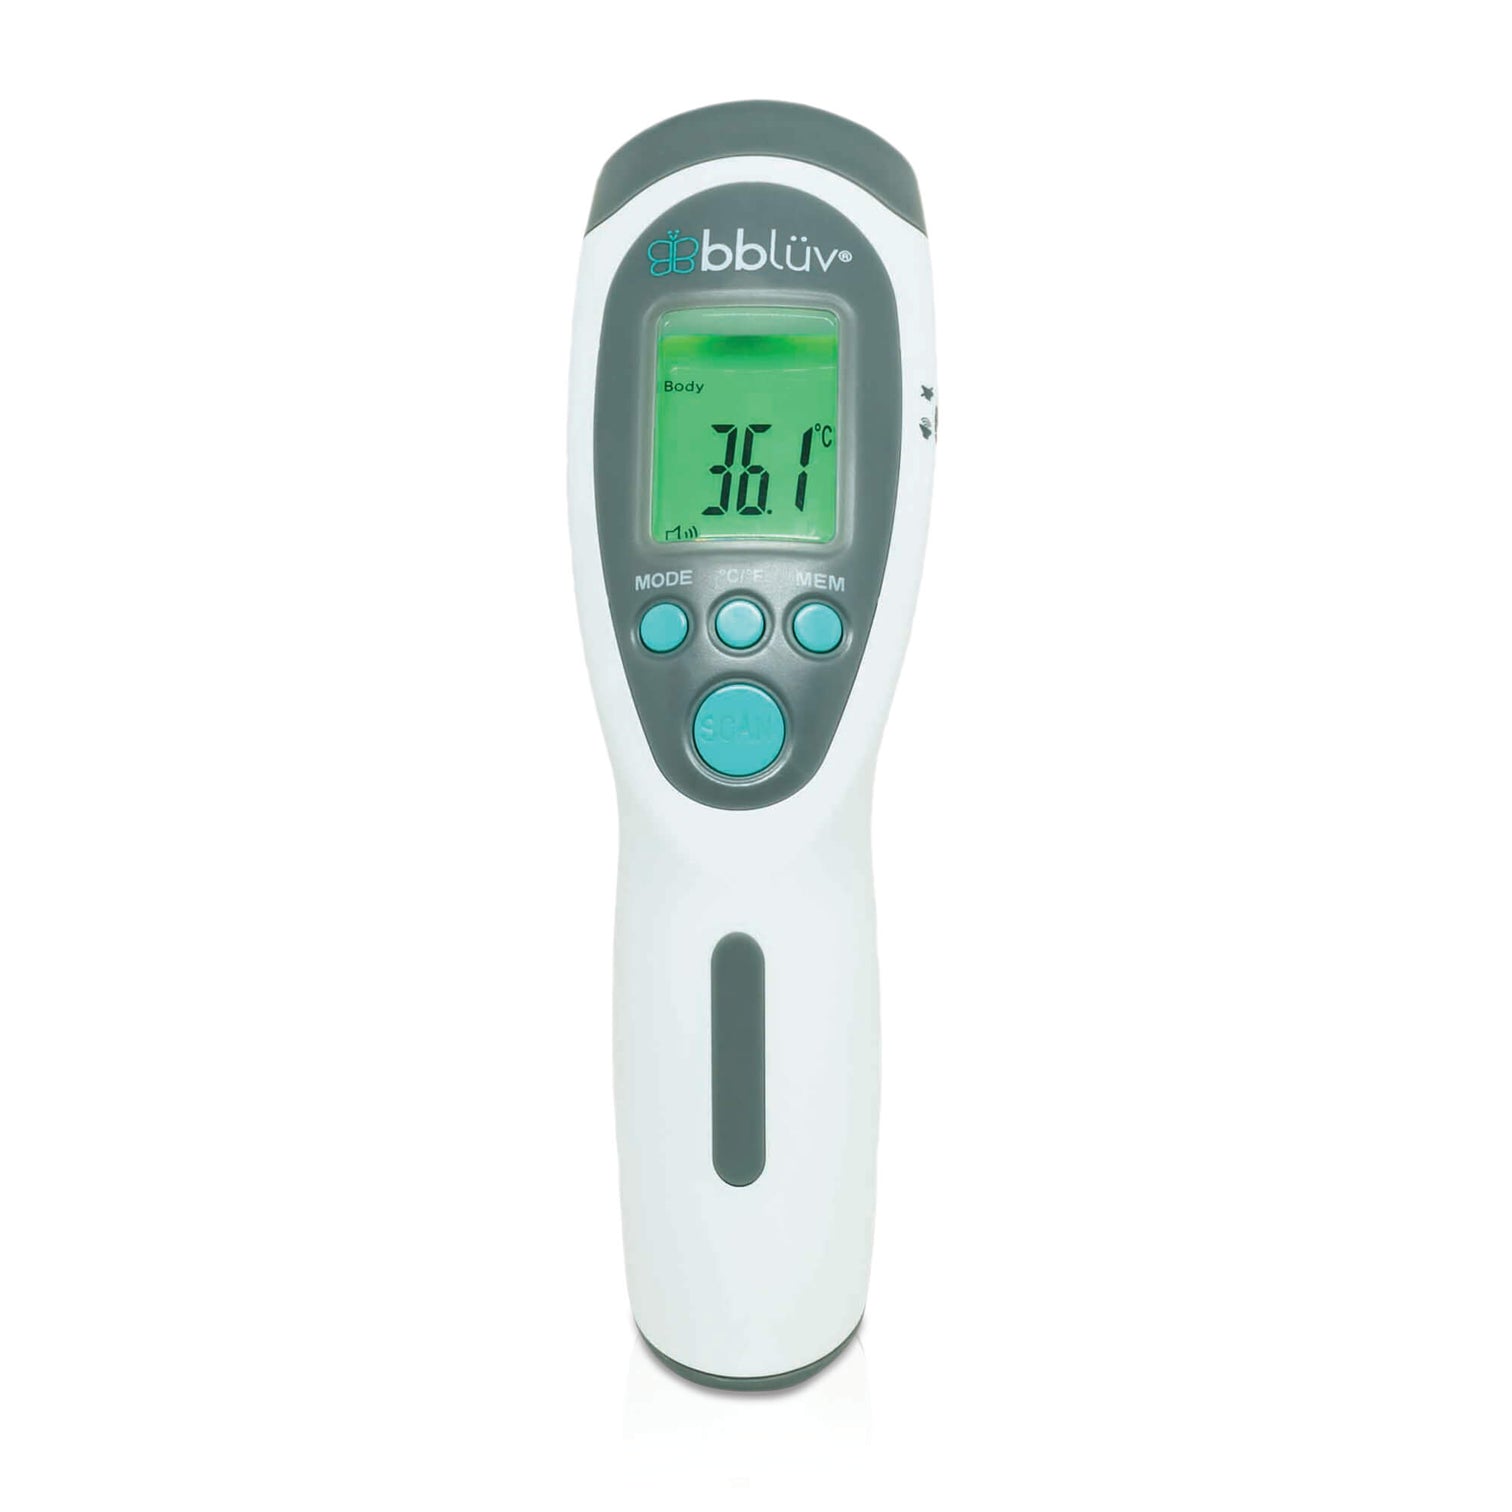 Thermomètre sans contact 4 en 1 pour bébé Termö bblüv